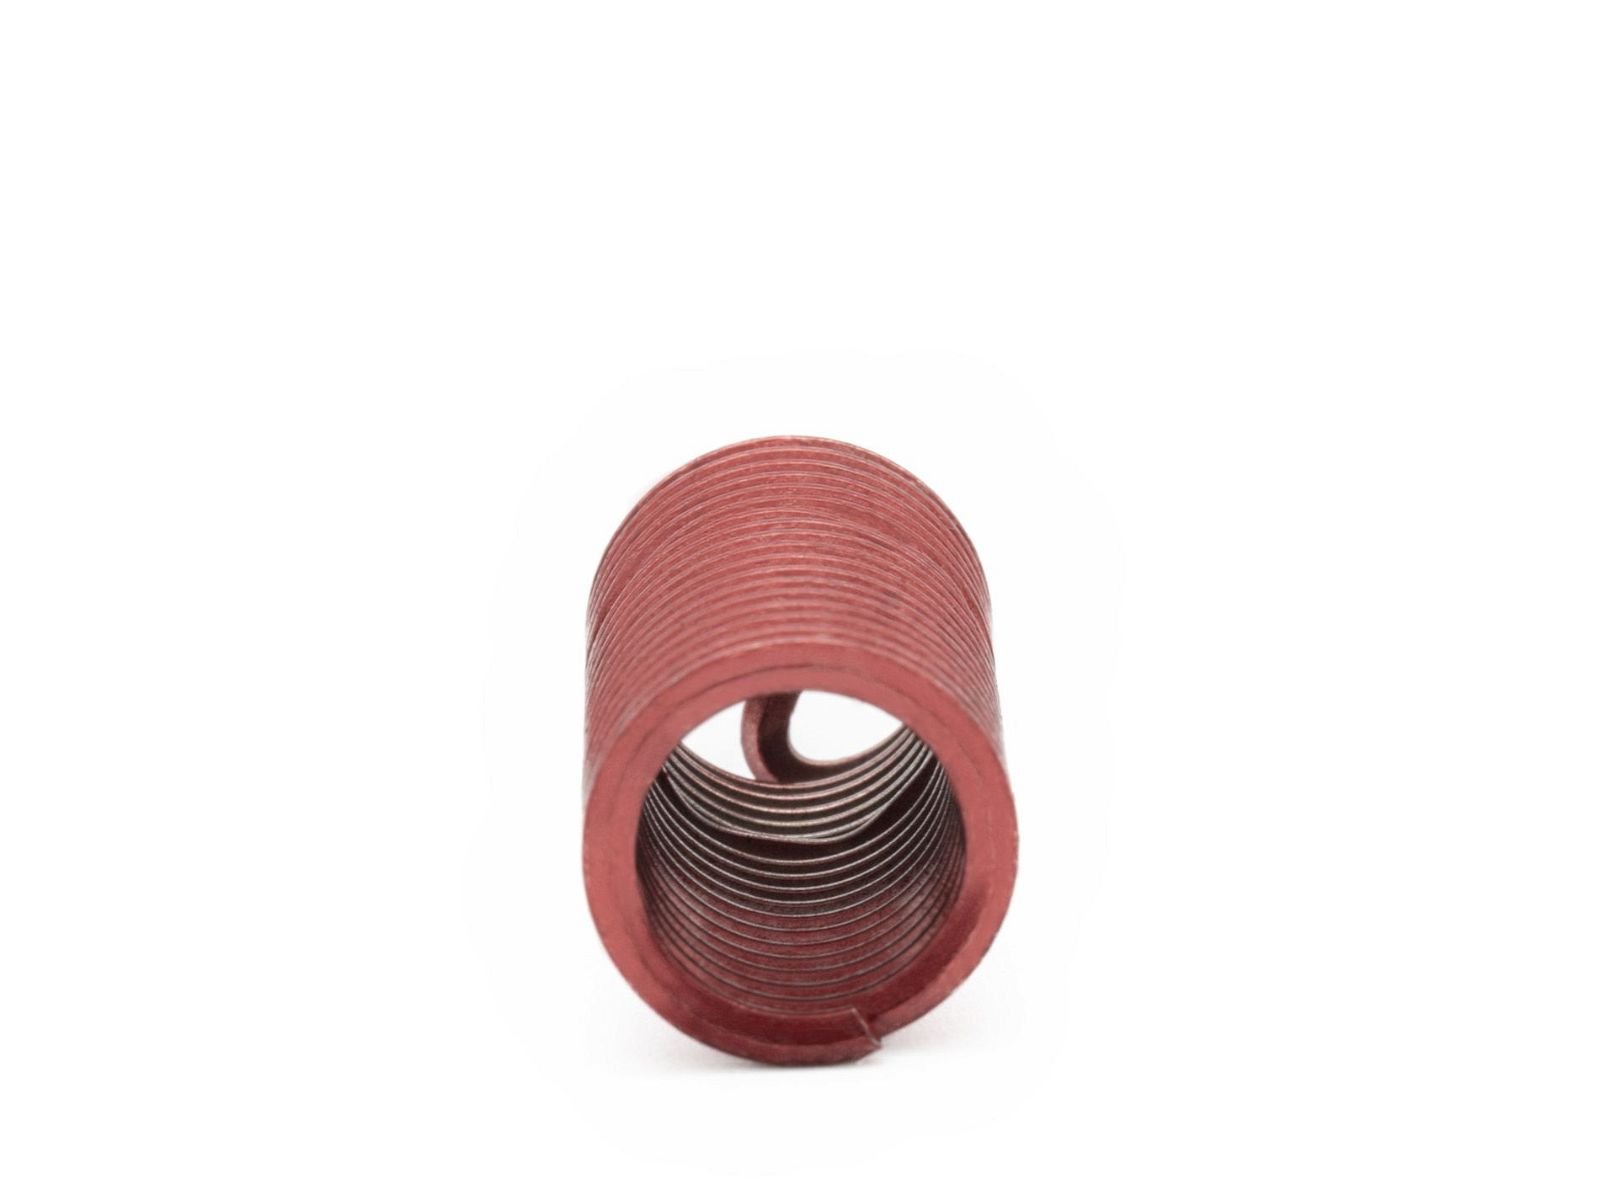 BaerCoil Drahtgewindeeinsätze UNC No. 10 x 24 - 3,0 D (14,48 mm) - screw grip (schraubensichernd) - 100 Stück